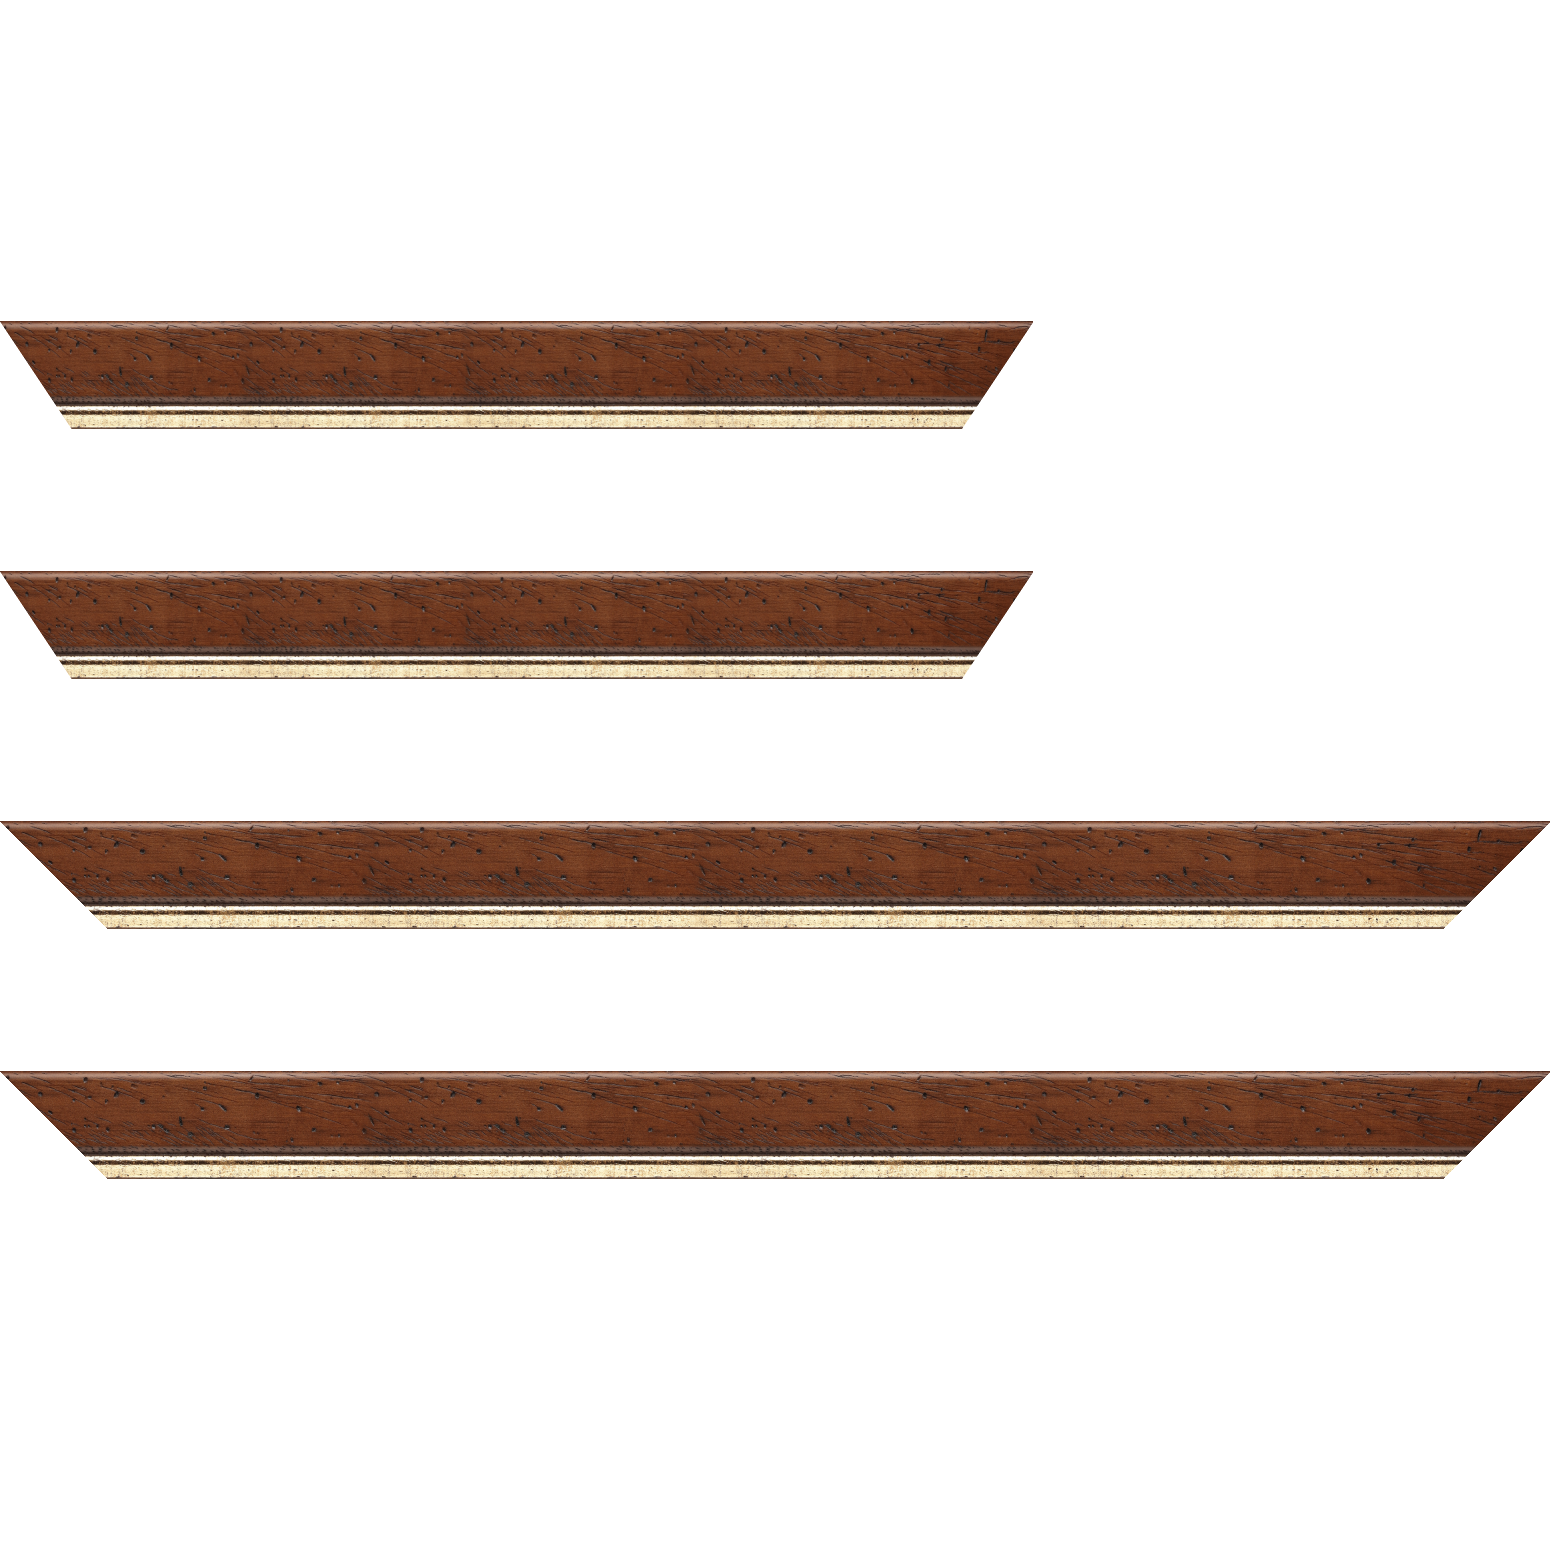 Baguette bois profil arrondi largeur 3.5cm marron satiné classique filet or - 34x40